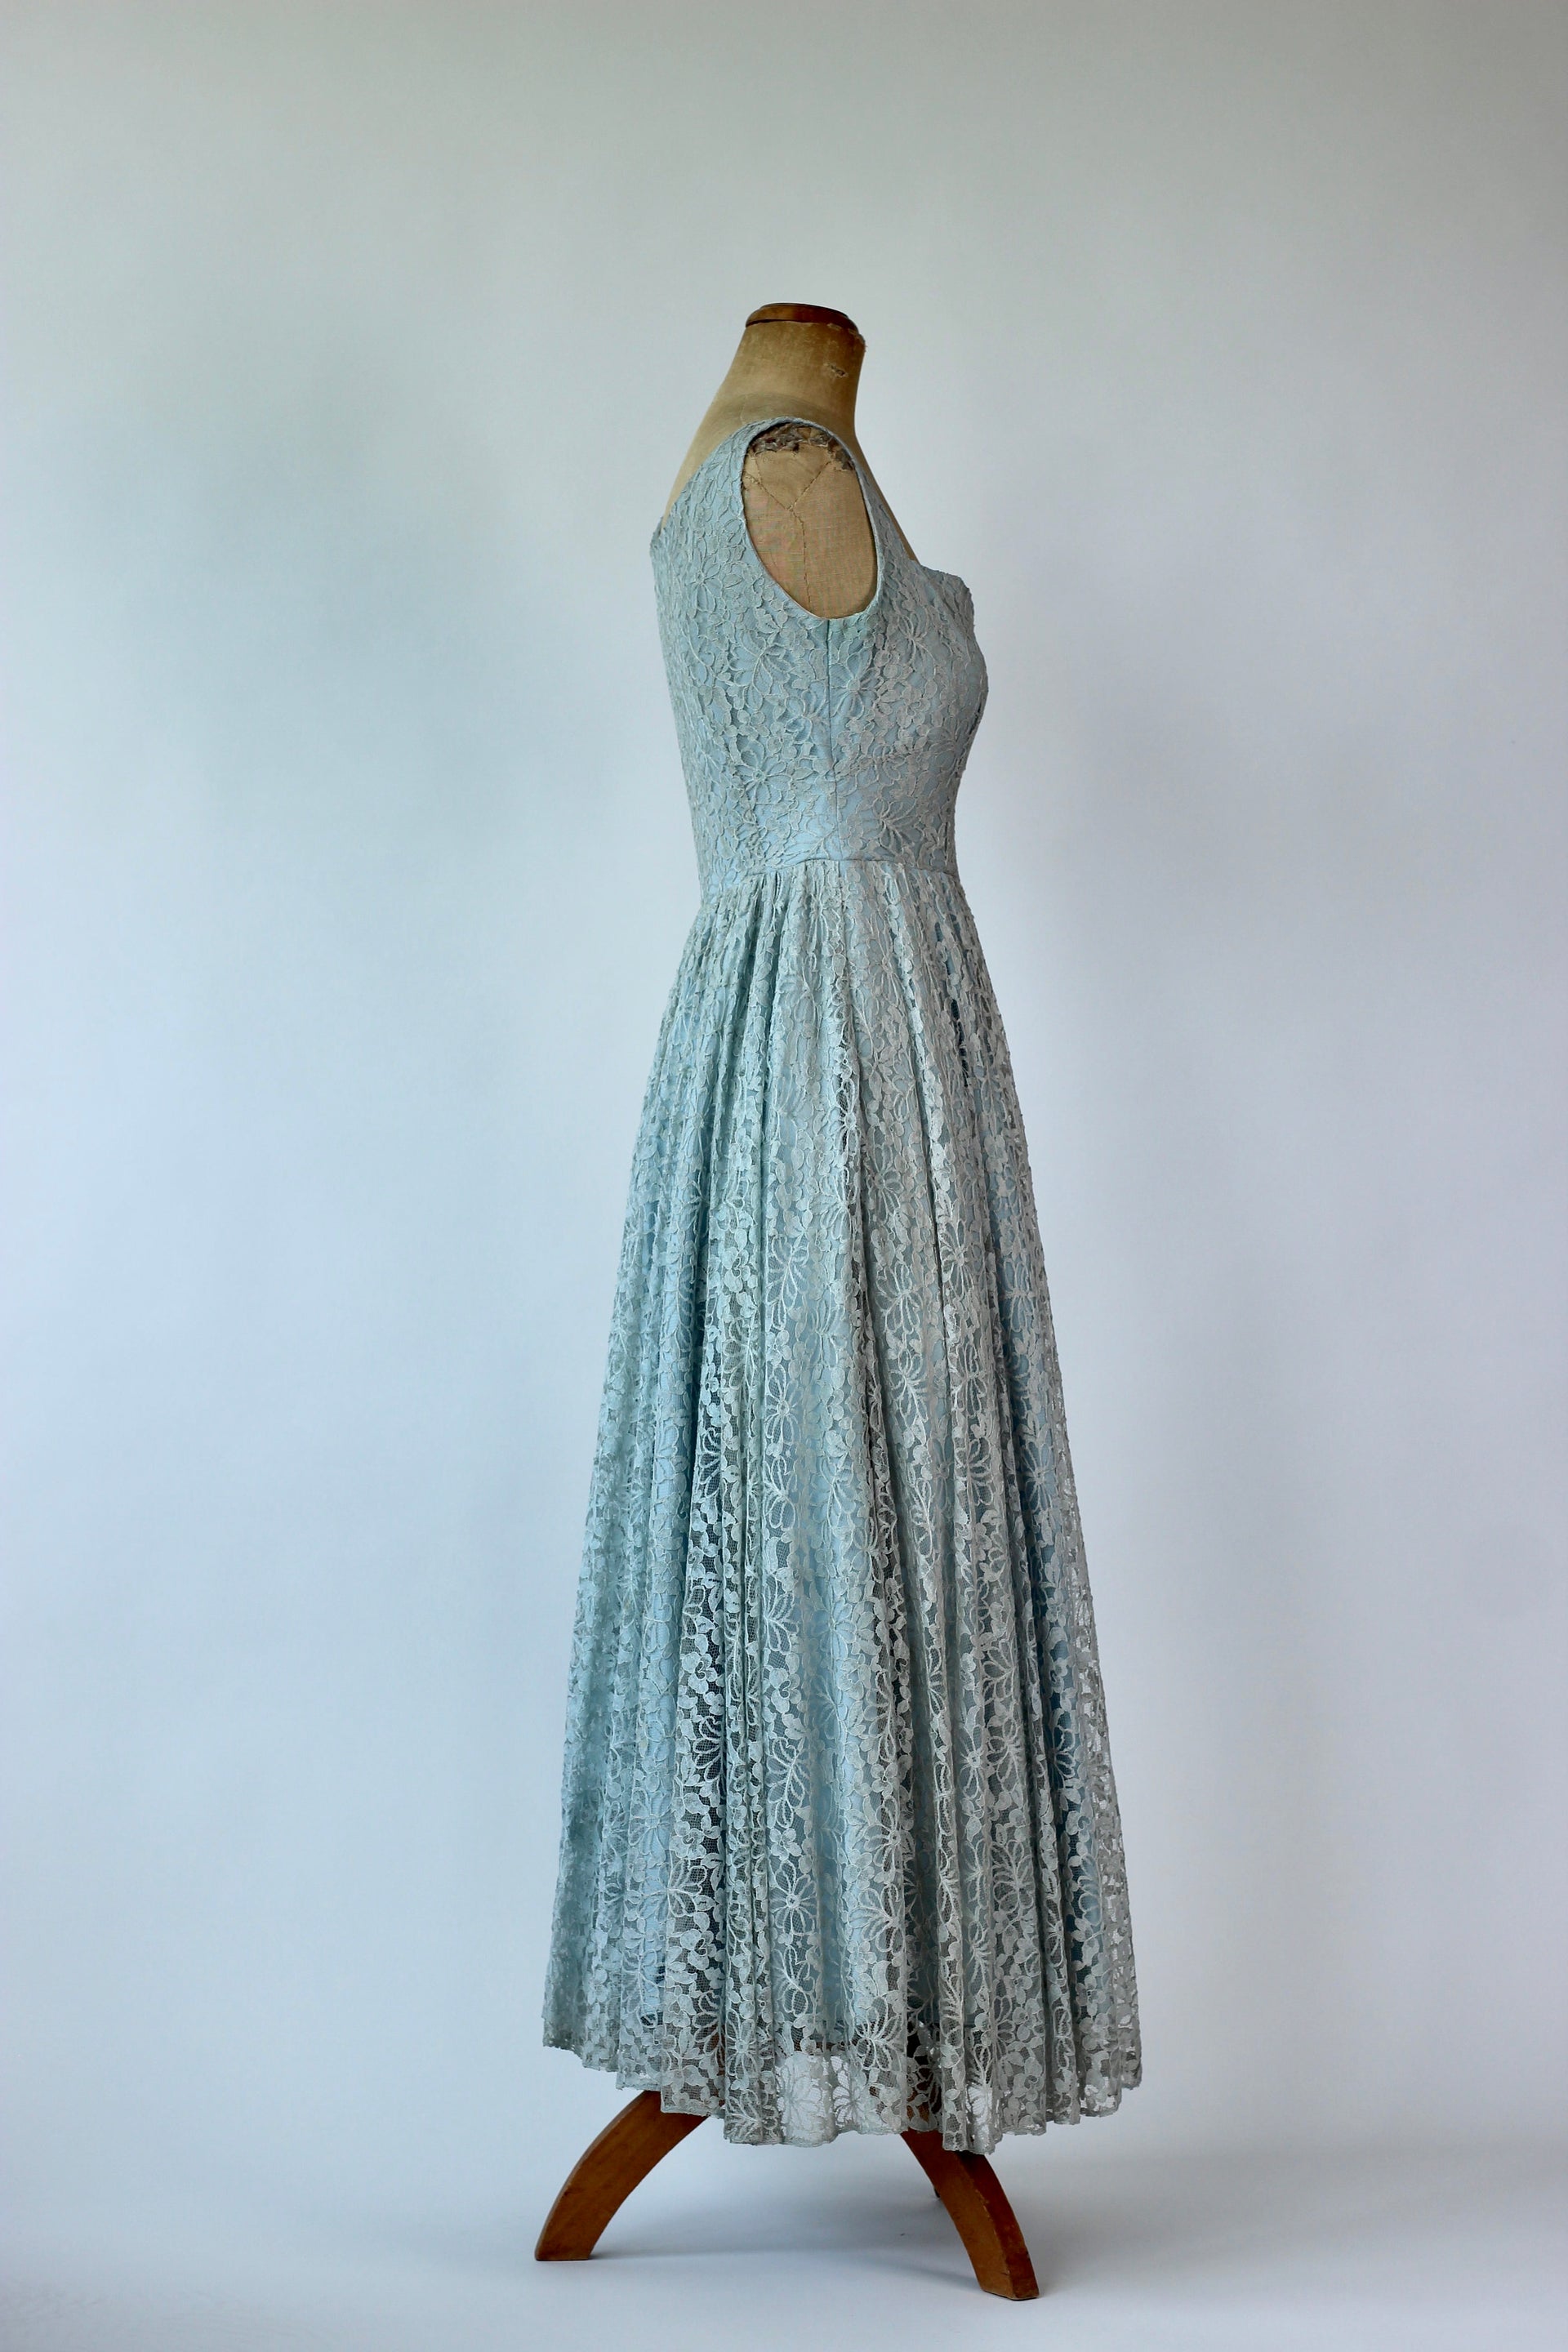 1950s Pale Blue Cocktail Lace Dress//Size S/M